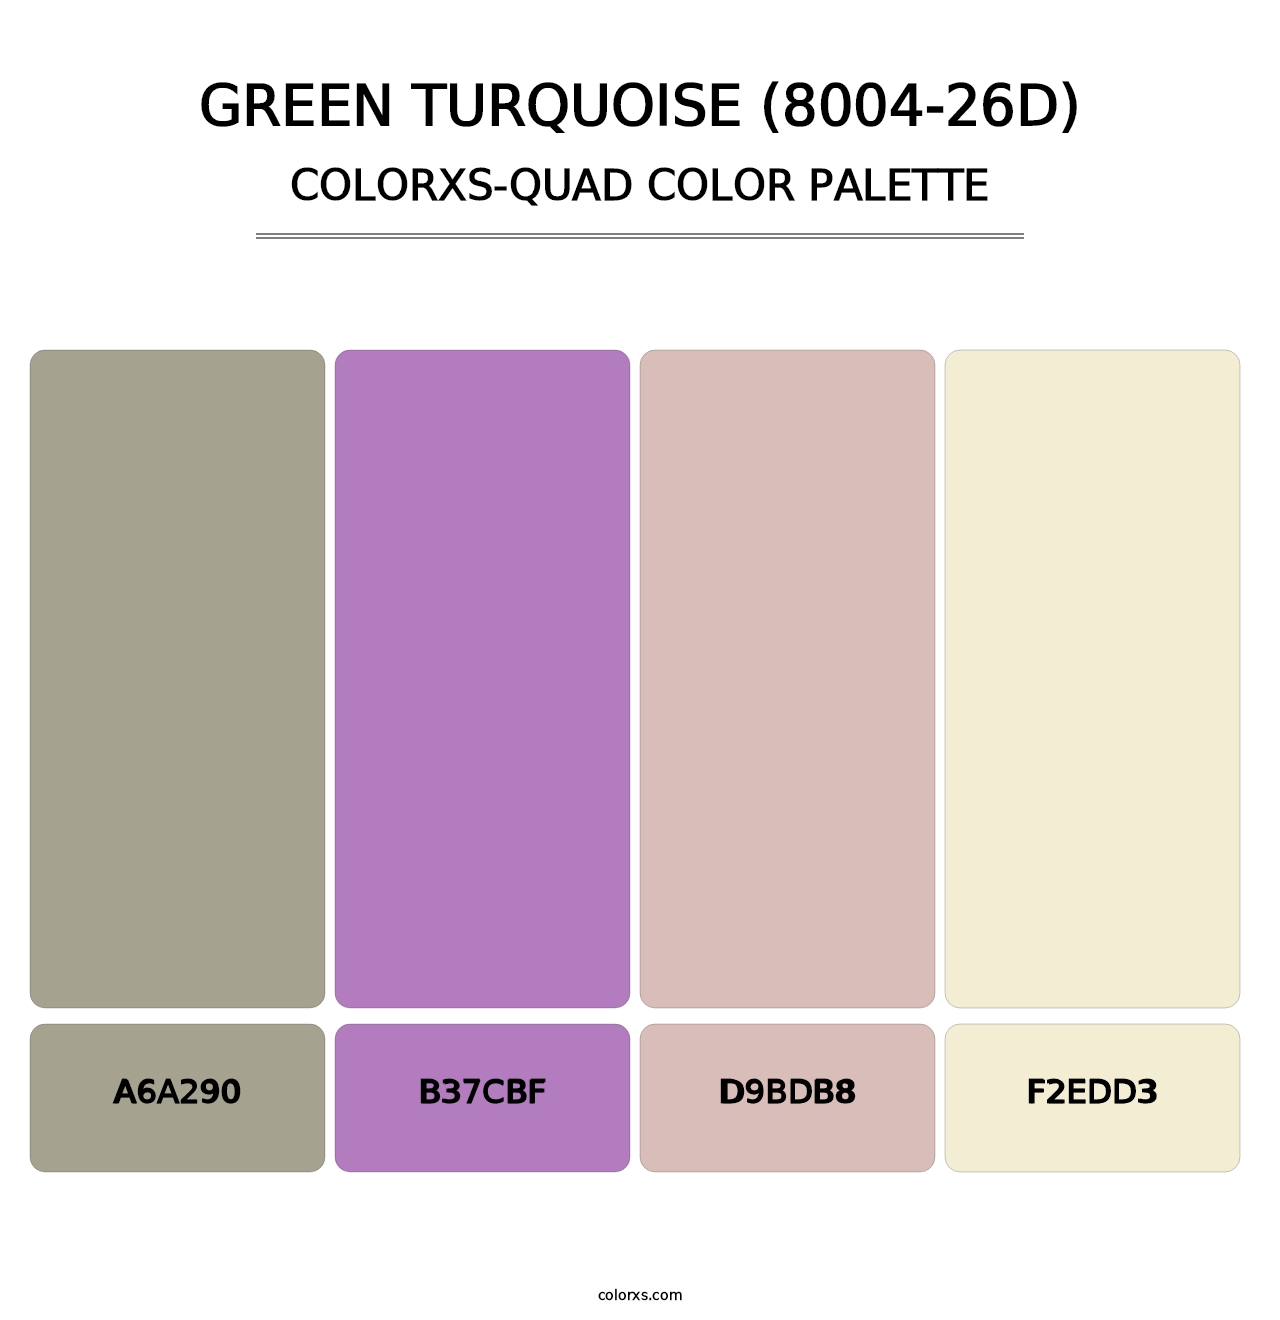 Green Turquoise (8004-26D) - Colorxs Quad Palette